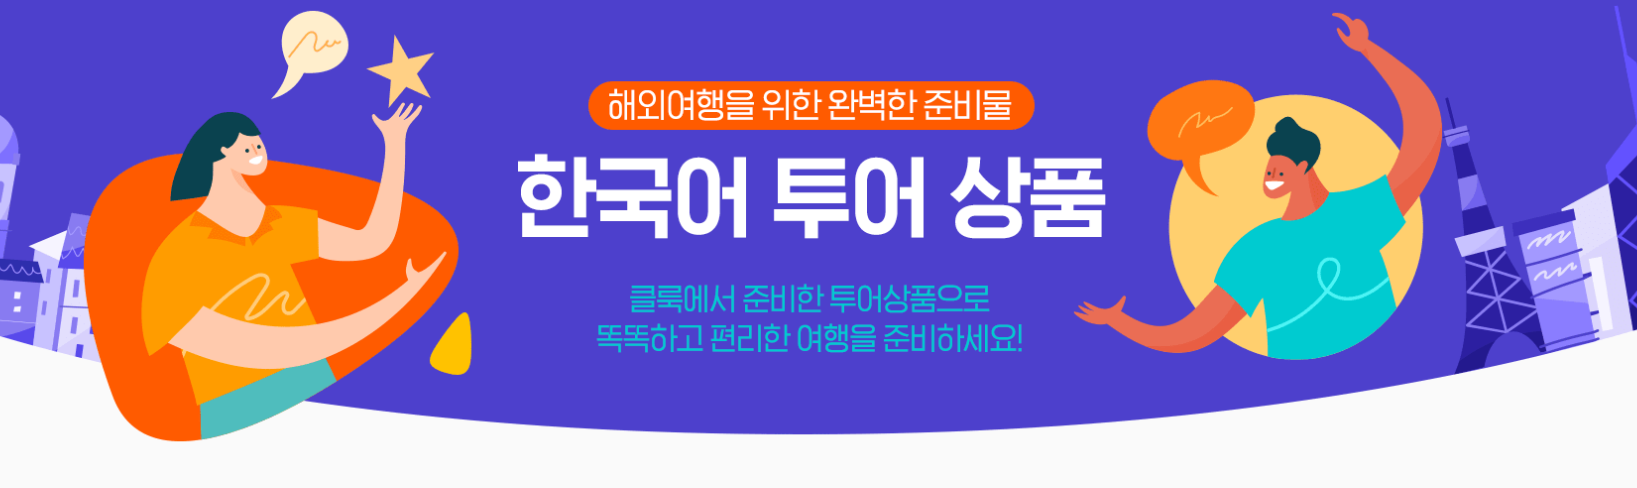 클룩 6월 할인코드: kt멤버쉽 할인코드&#44; 제주렌트카 할인코드&#44; 한국어 가이드 투어상품 할인&#44; 최저가 리스트 by 클룩